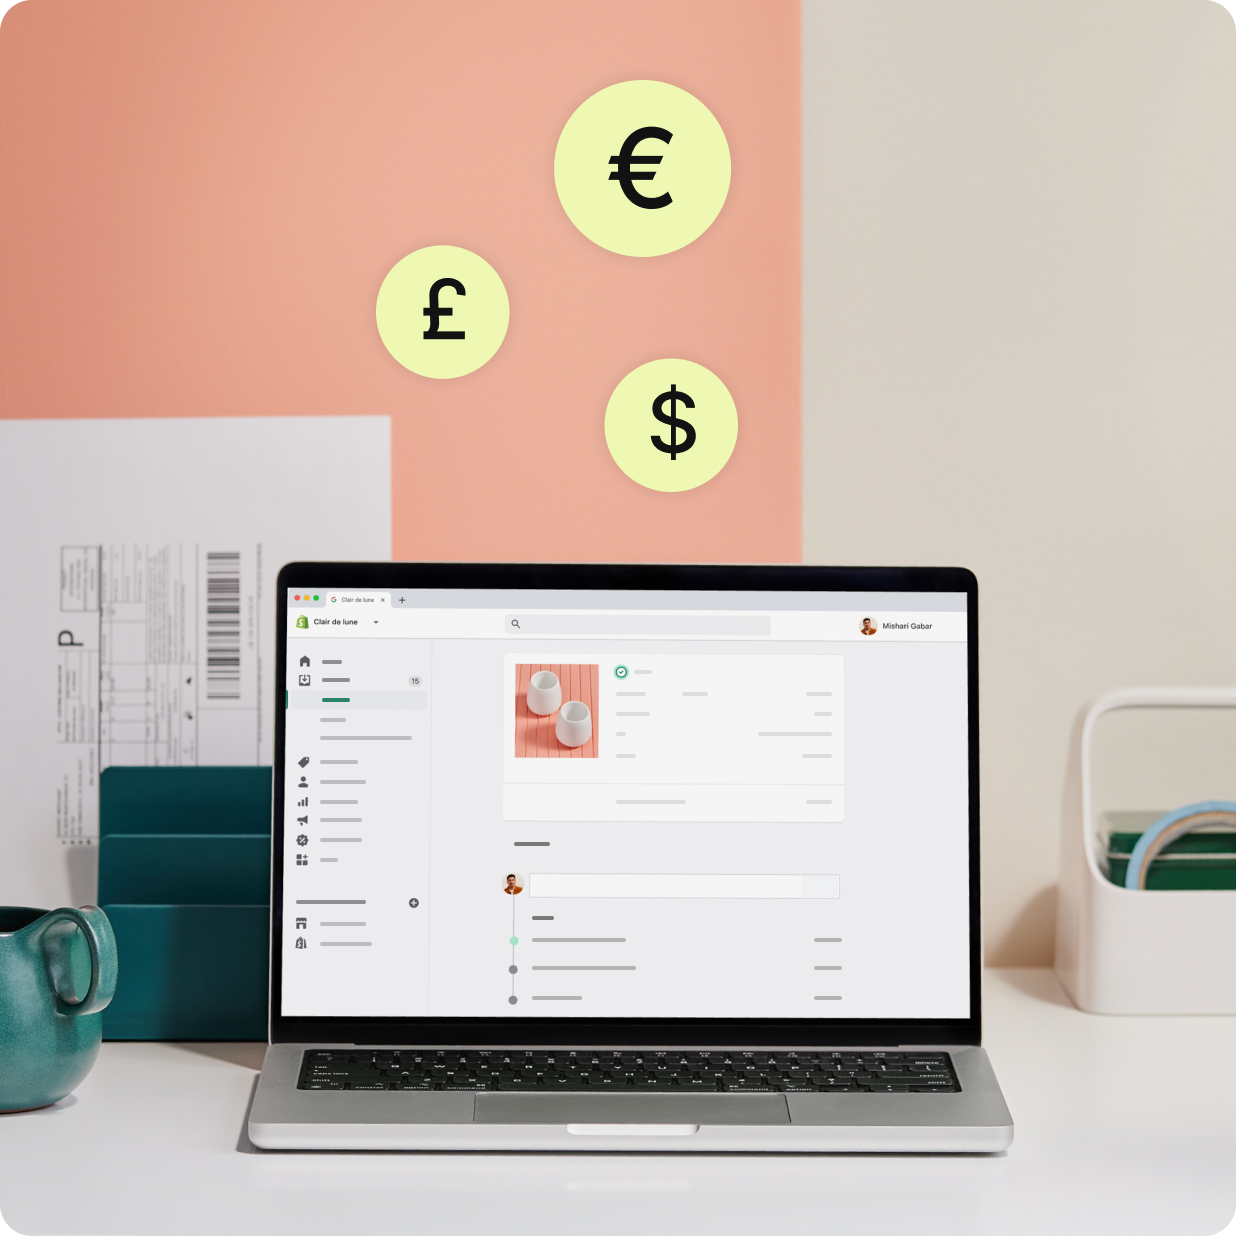 Computadora portátil que muestra pedidos y facturas de Shopify Payments con varios símbolos de moneda.